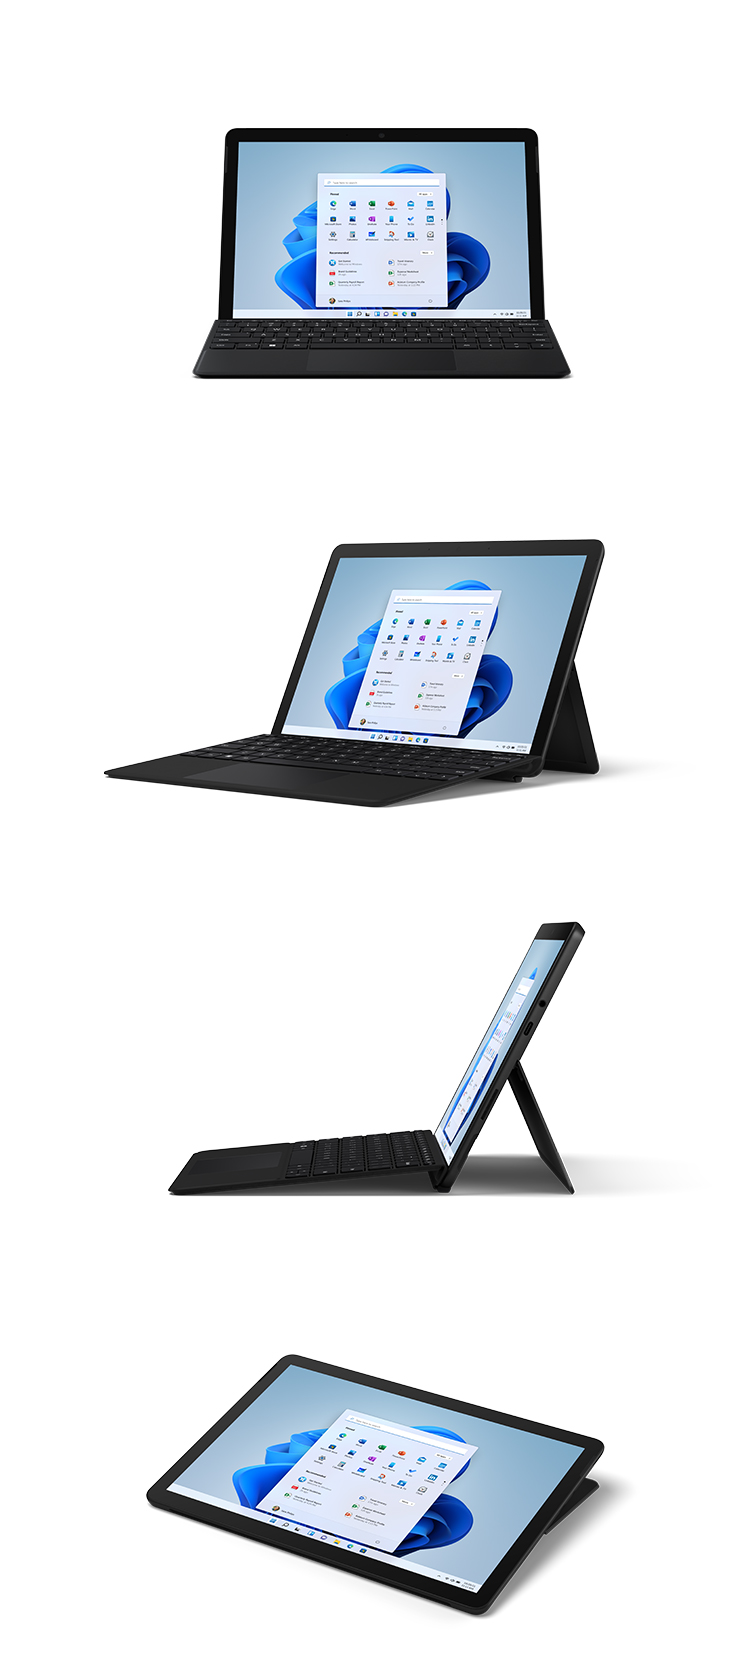 Abbildungen des Surface Go 3 mit Type Cover in Schwarz von vorne, schräg, von der Seite und im Studio-Modus.